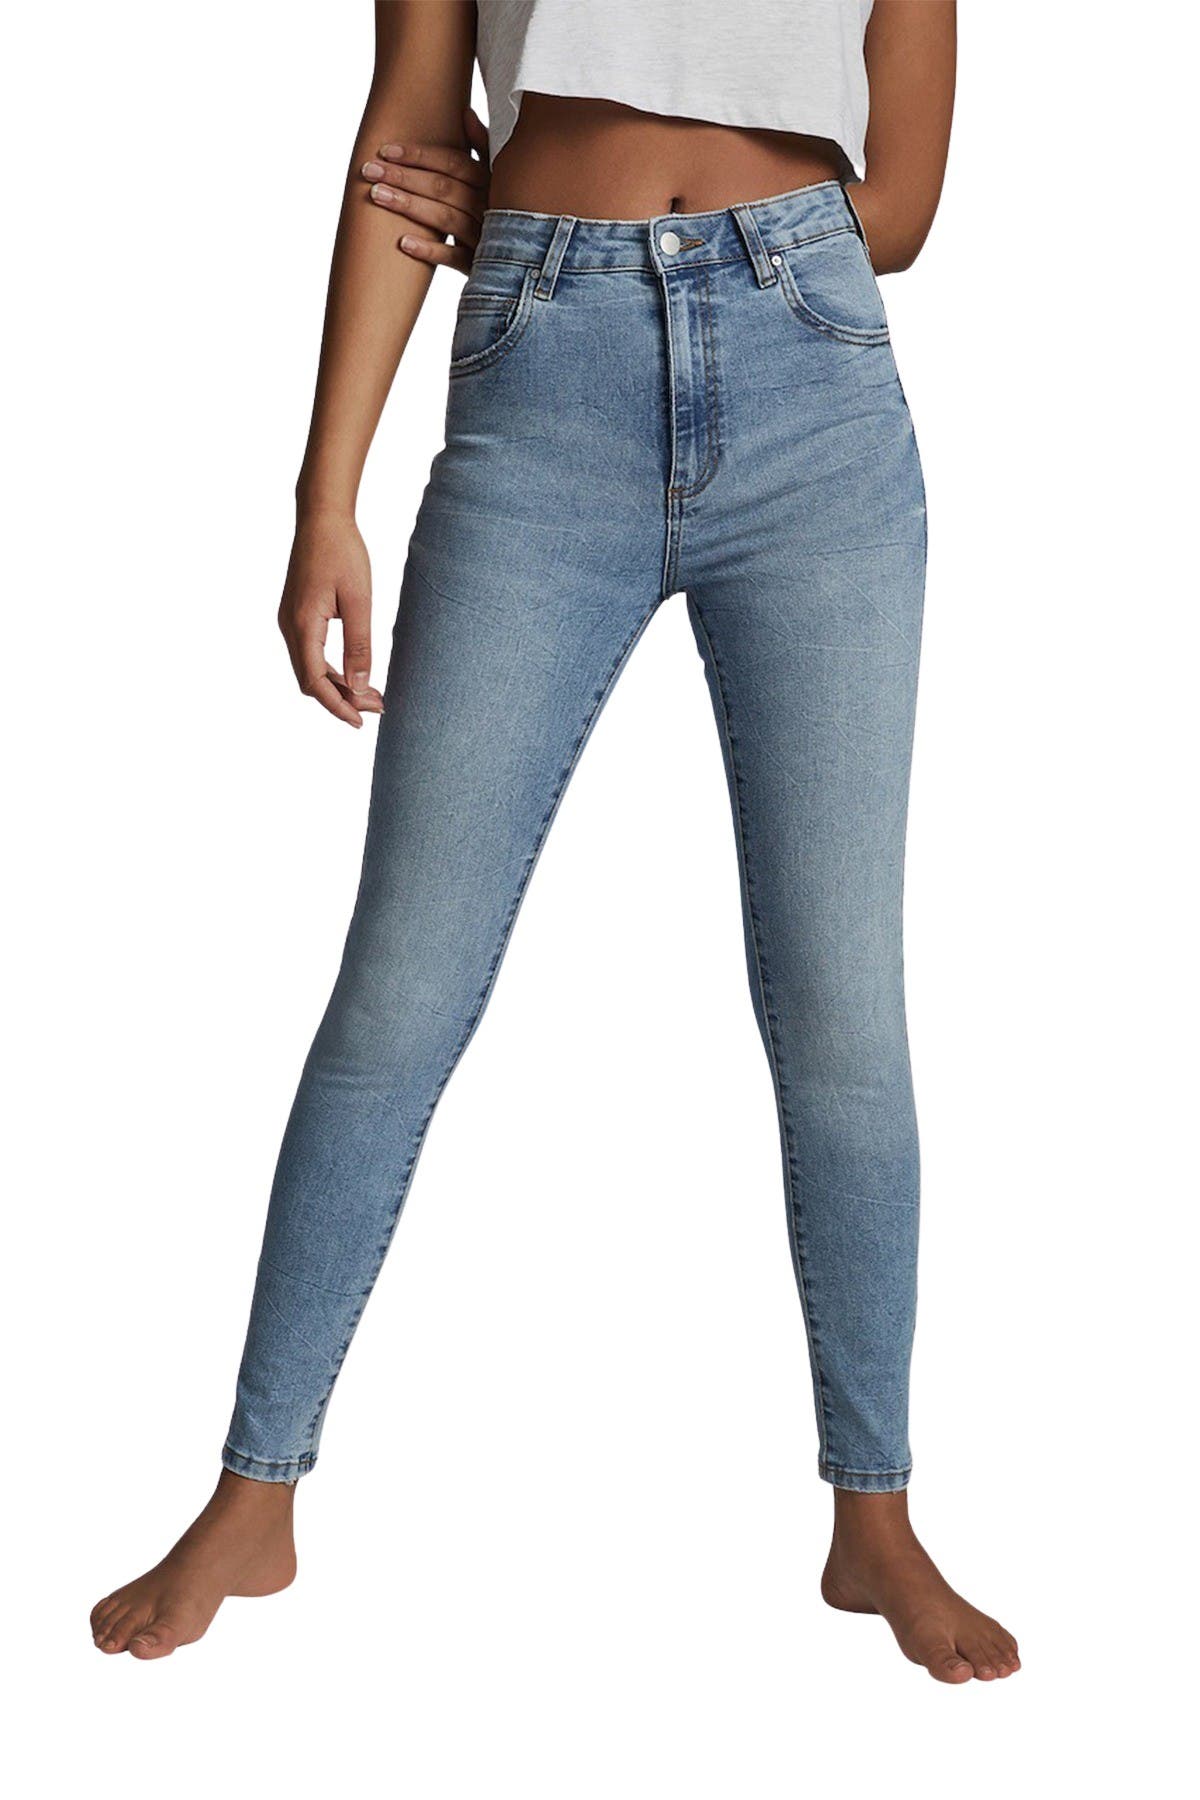 nordstrom rack skinny jeans